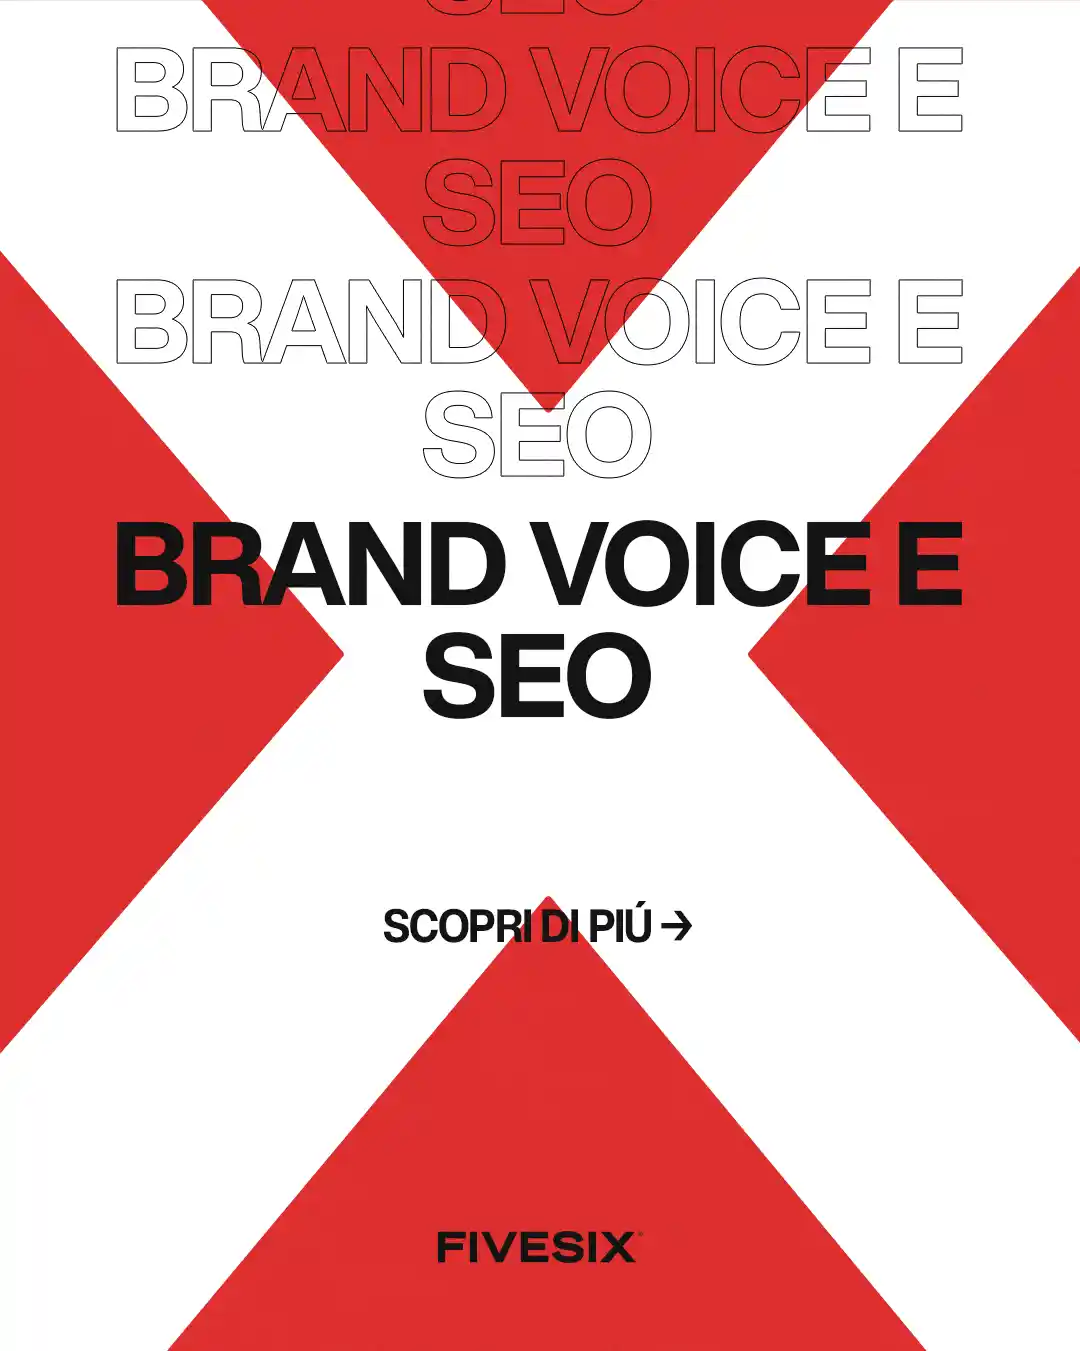 Immagine per 'Brand voice e SEO: come la voce del tuo brand influenza il posizionamento sui motori di ricerca' - Fivesix Studio. Specializzati in Branding, Personal Branding, Marketing e Comunicazione.